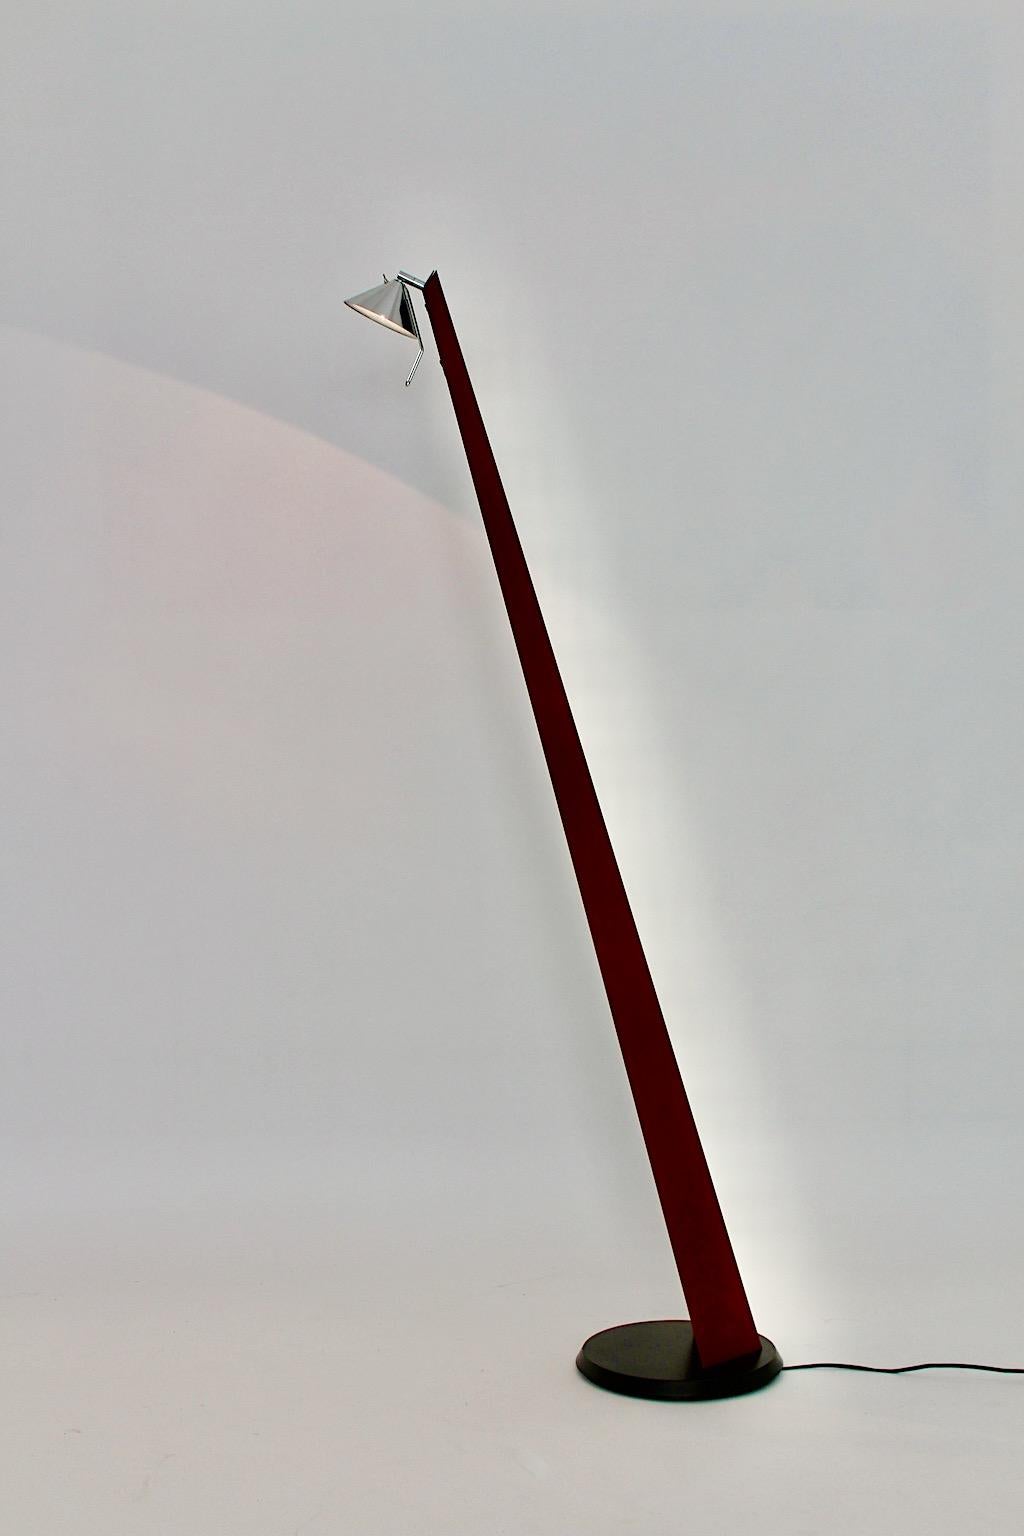 The Scandinavian Modern Design vintage lampadaire forme d'angle en plastique et métal chromé années 1980.
Un lampadaire épuré et neutre, caractérisé par des caractéristiques minimales et propres telles que la forme angulaire et la couleur brune